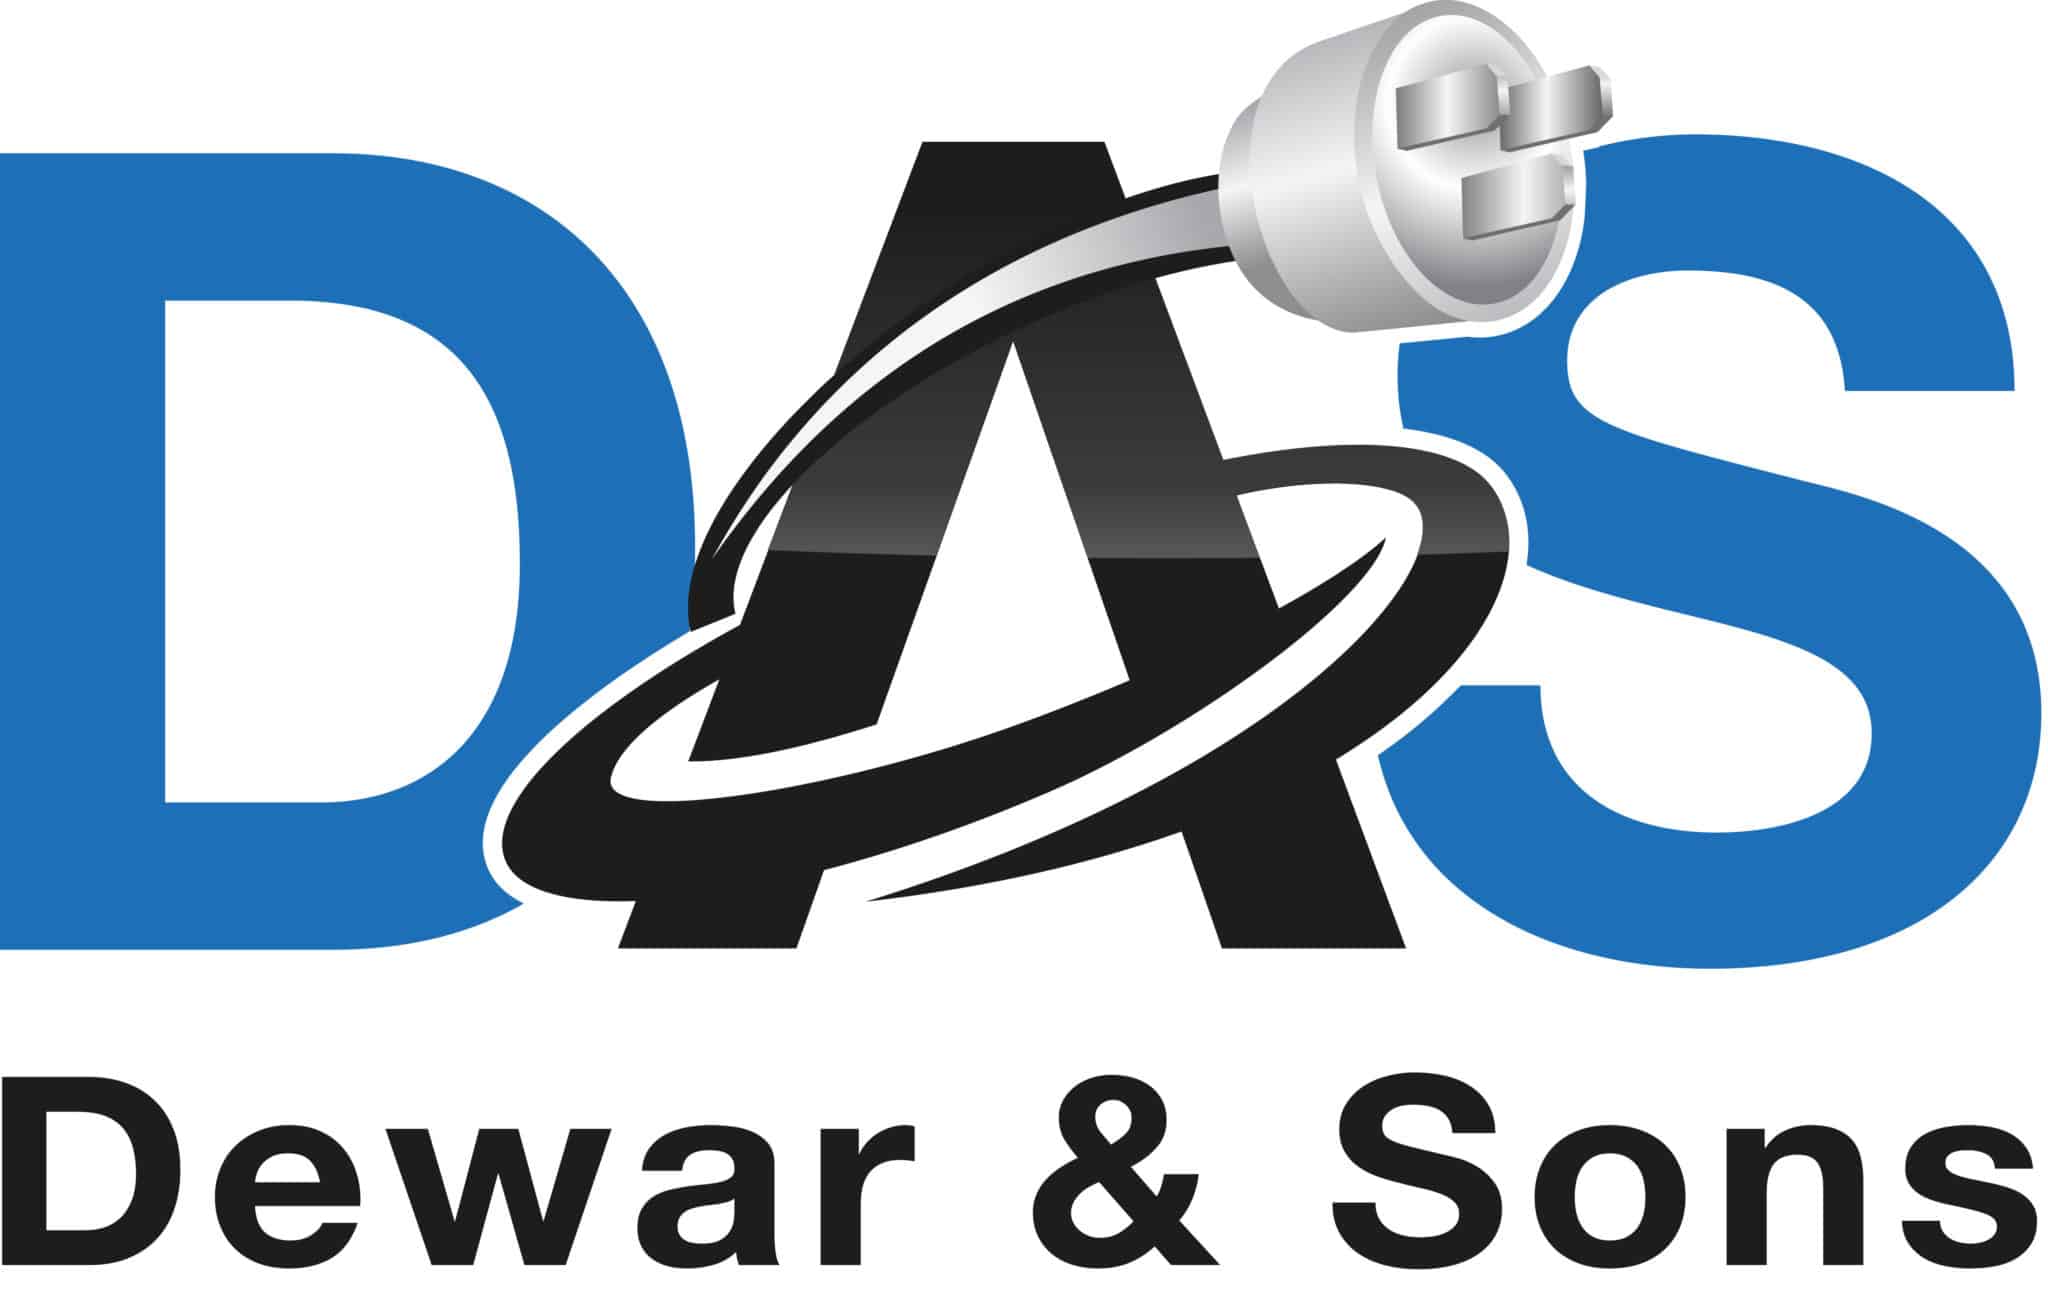 DAS logo